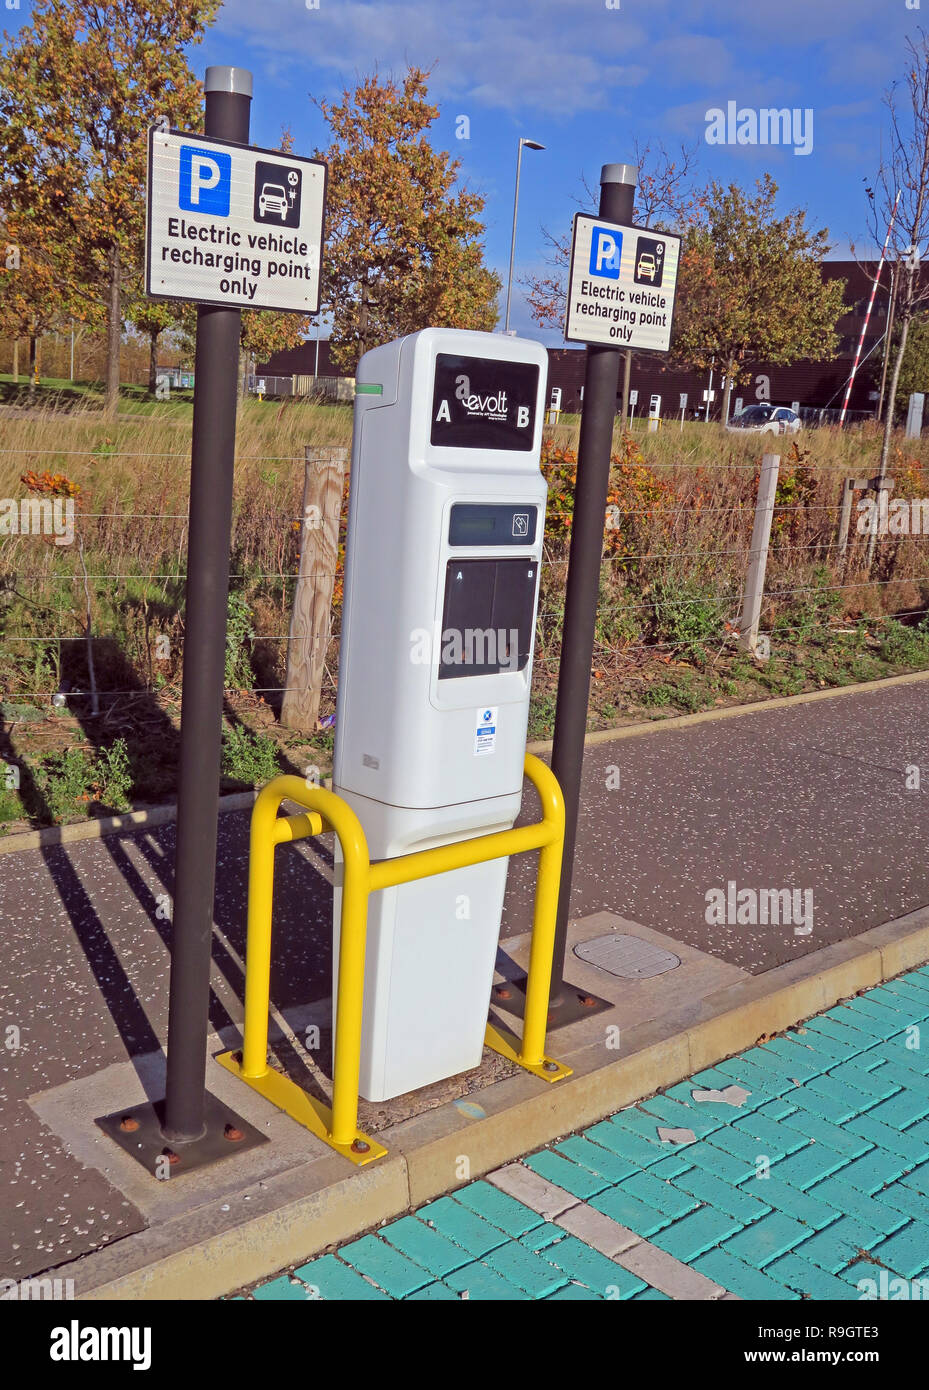 Point de recharge de véhicules électriques uniquement, Eskbank gare, Dalkeith, Midlothian, Ecosse, Royaume-Uni Banque D'Images